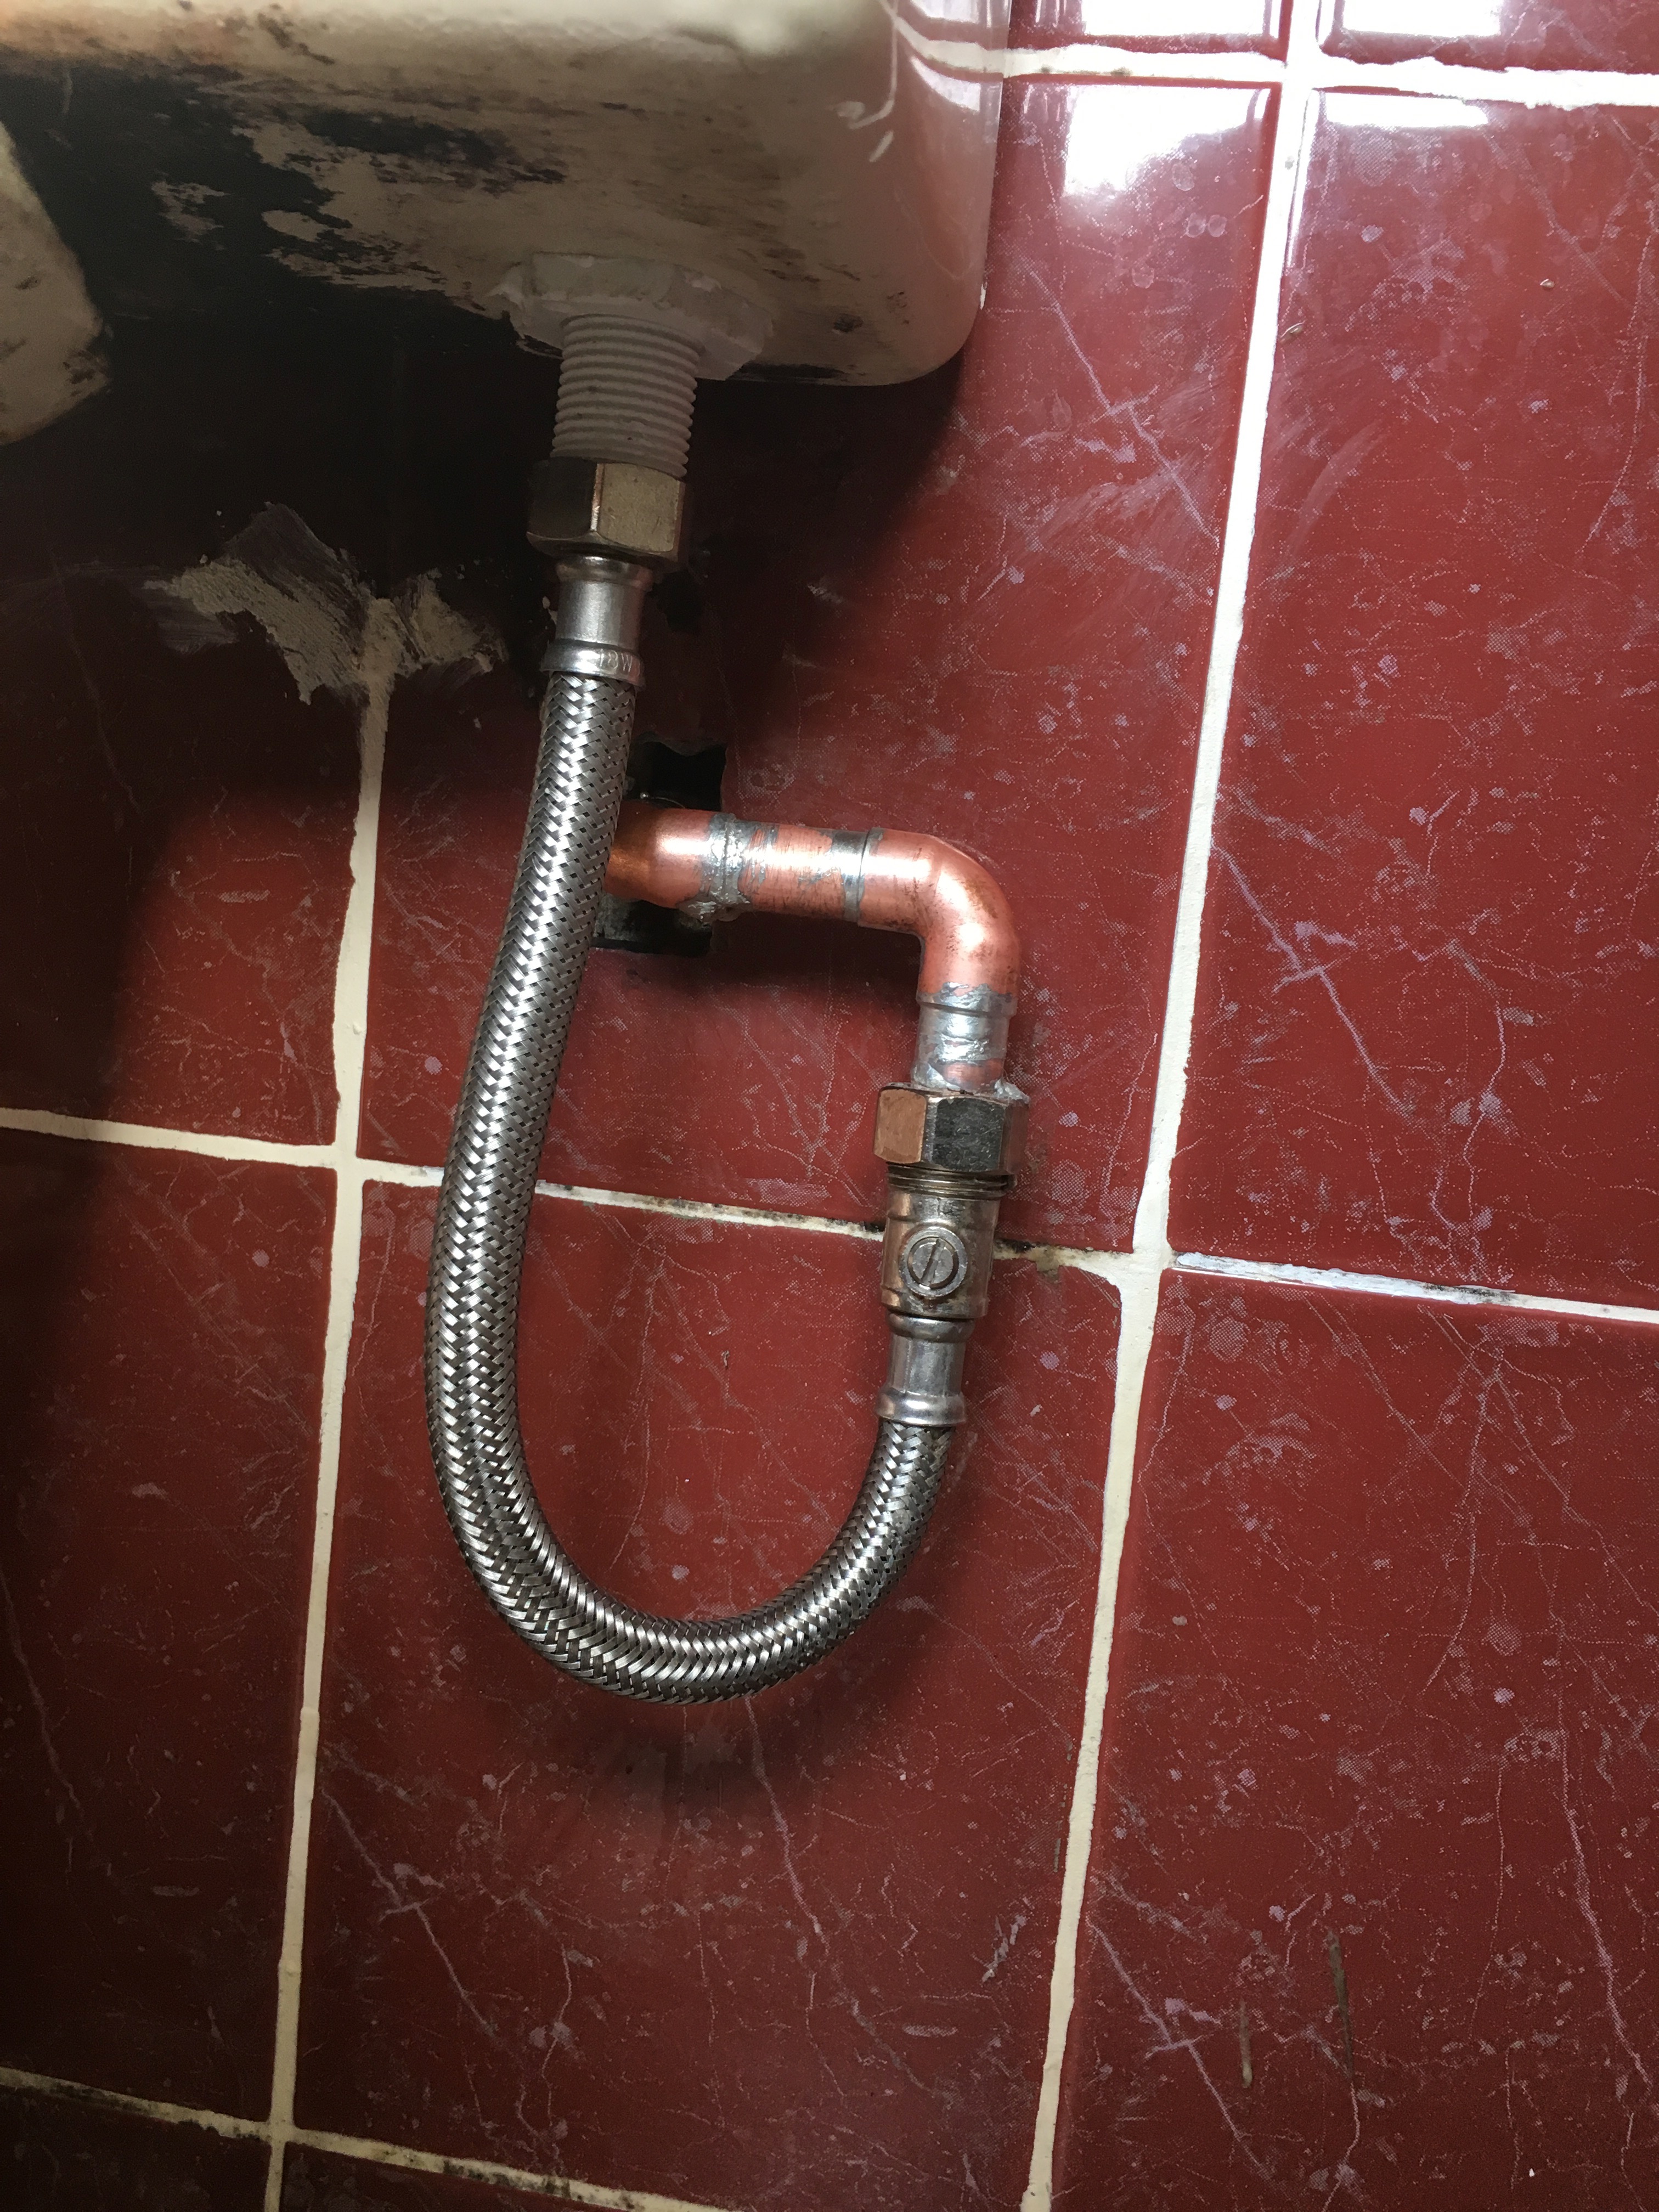 Emergency repair on leaking pipe